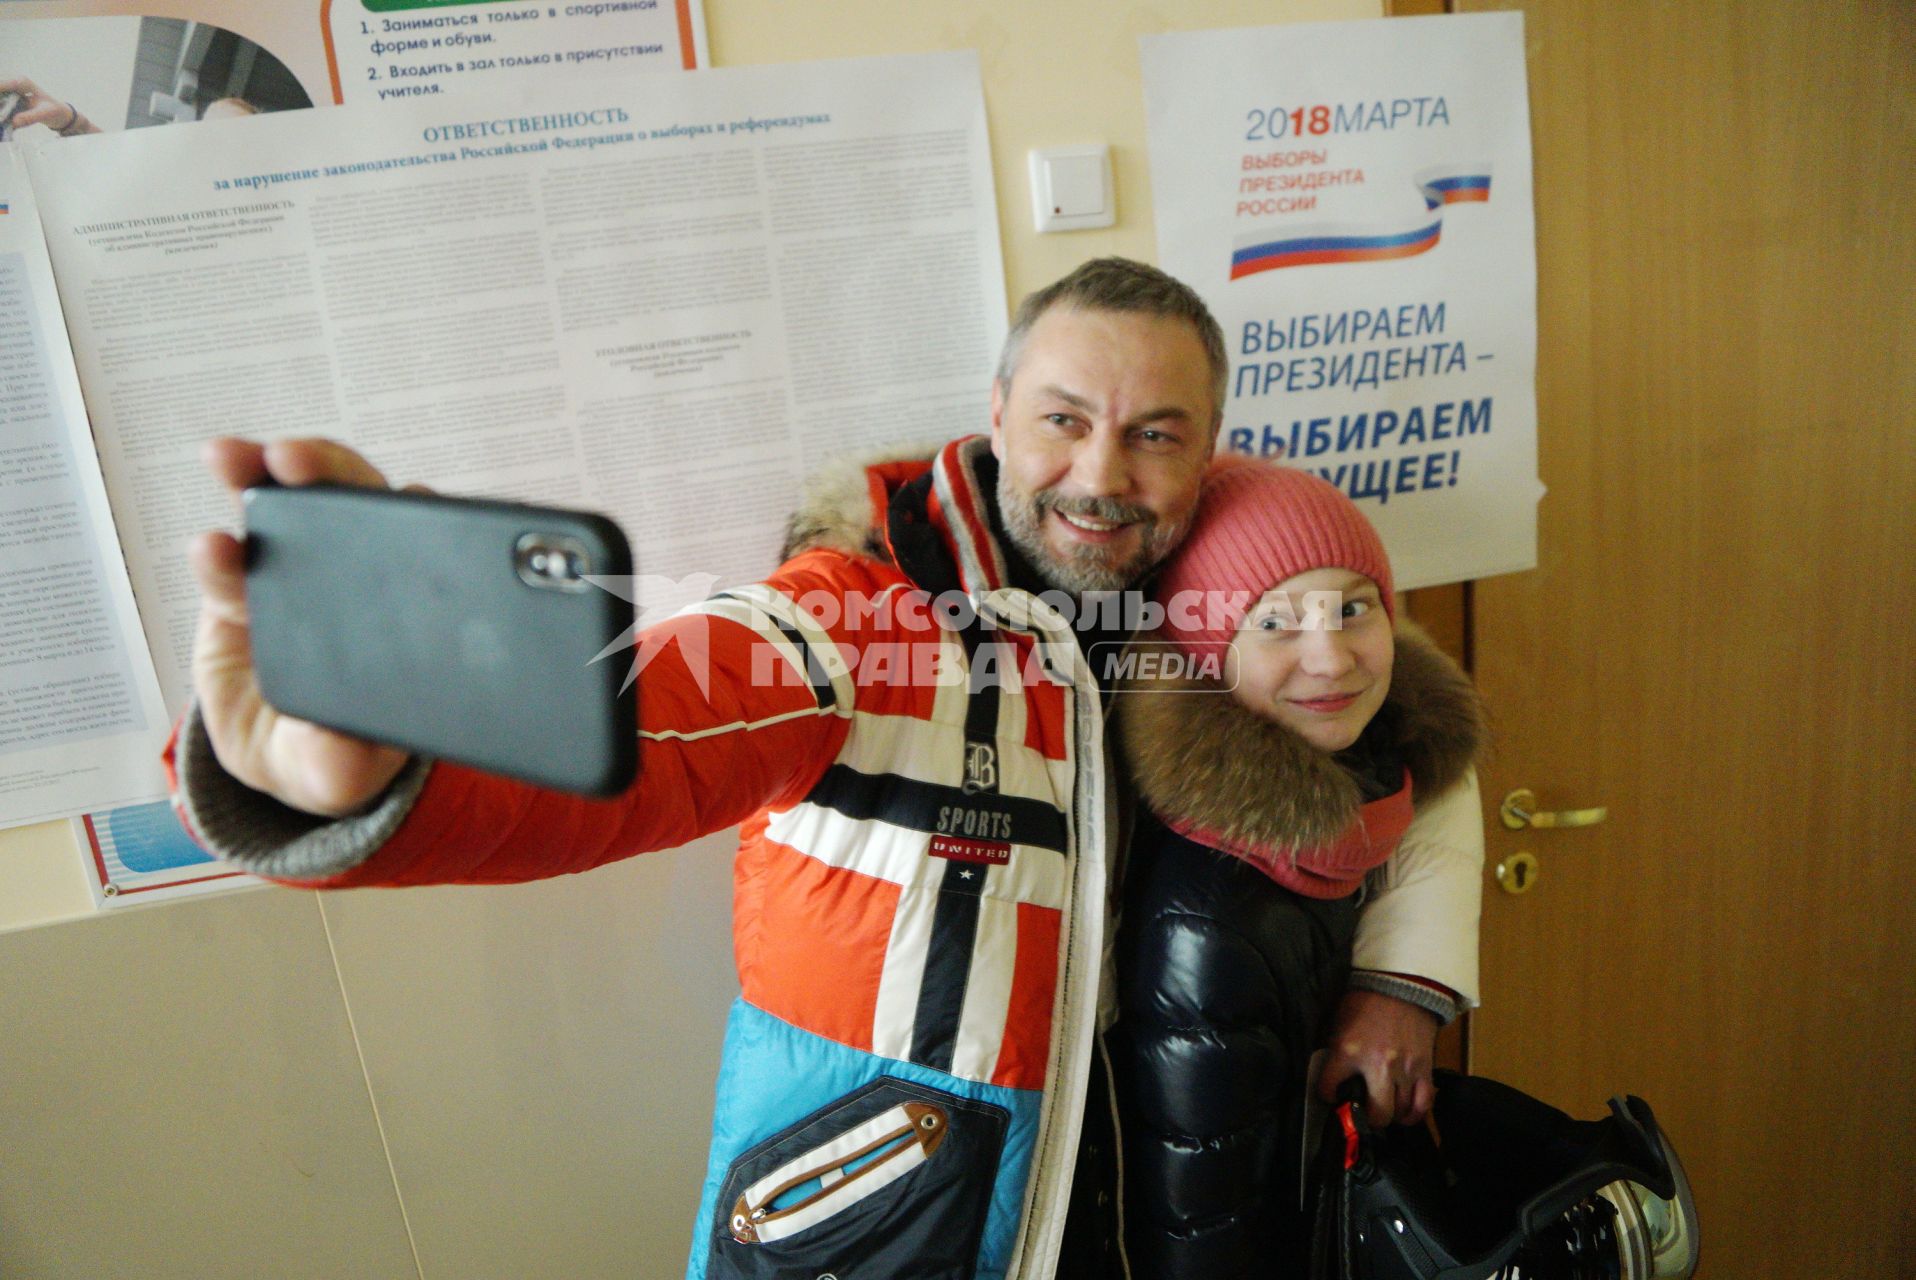 Екатеринбург. Мужчина с дочерью делают селфиа избирательном участке во время выборов президента России в 2018г